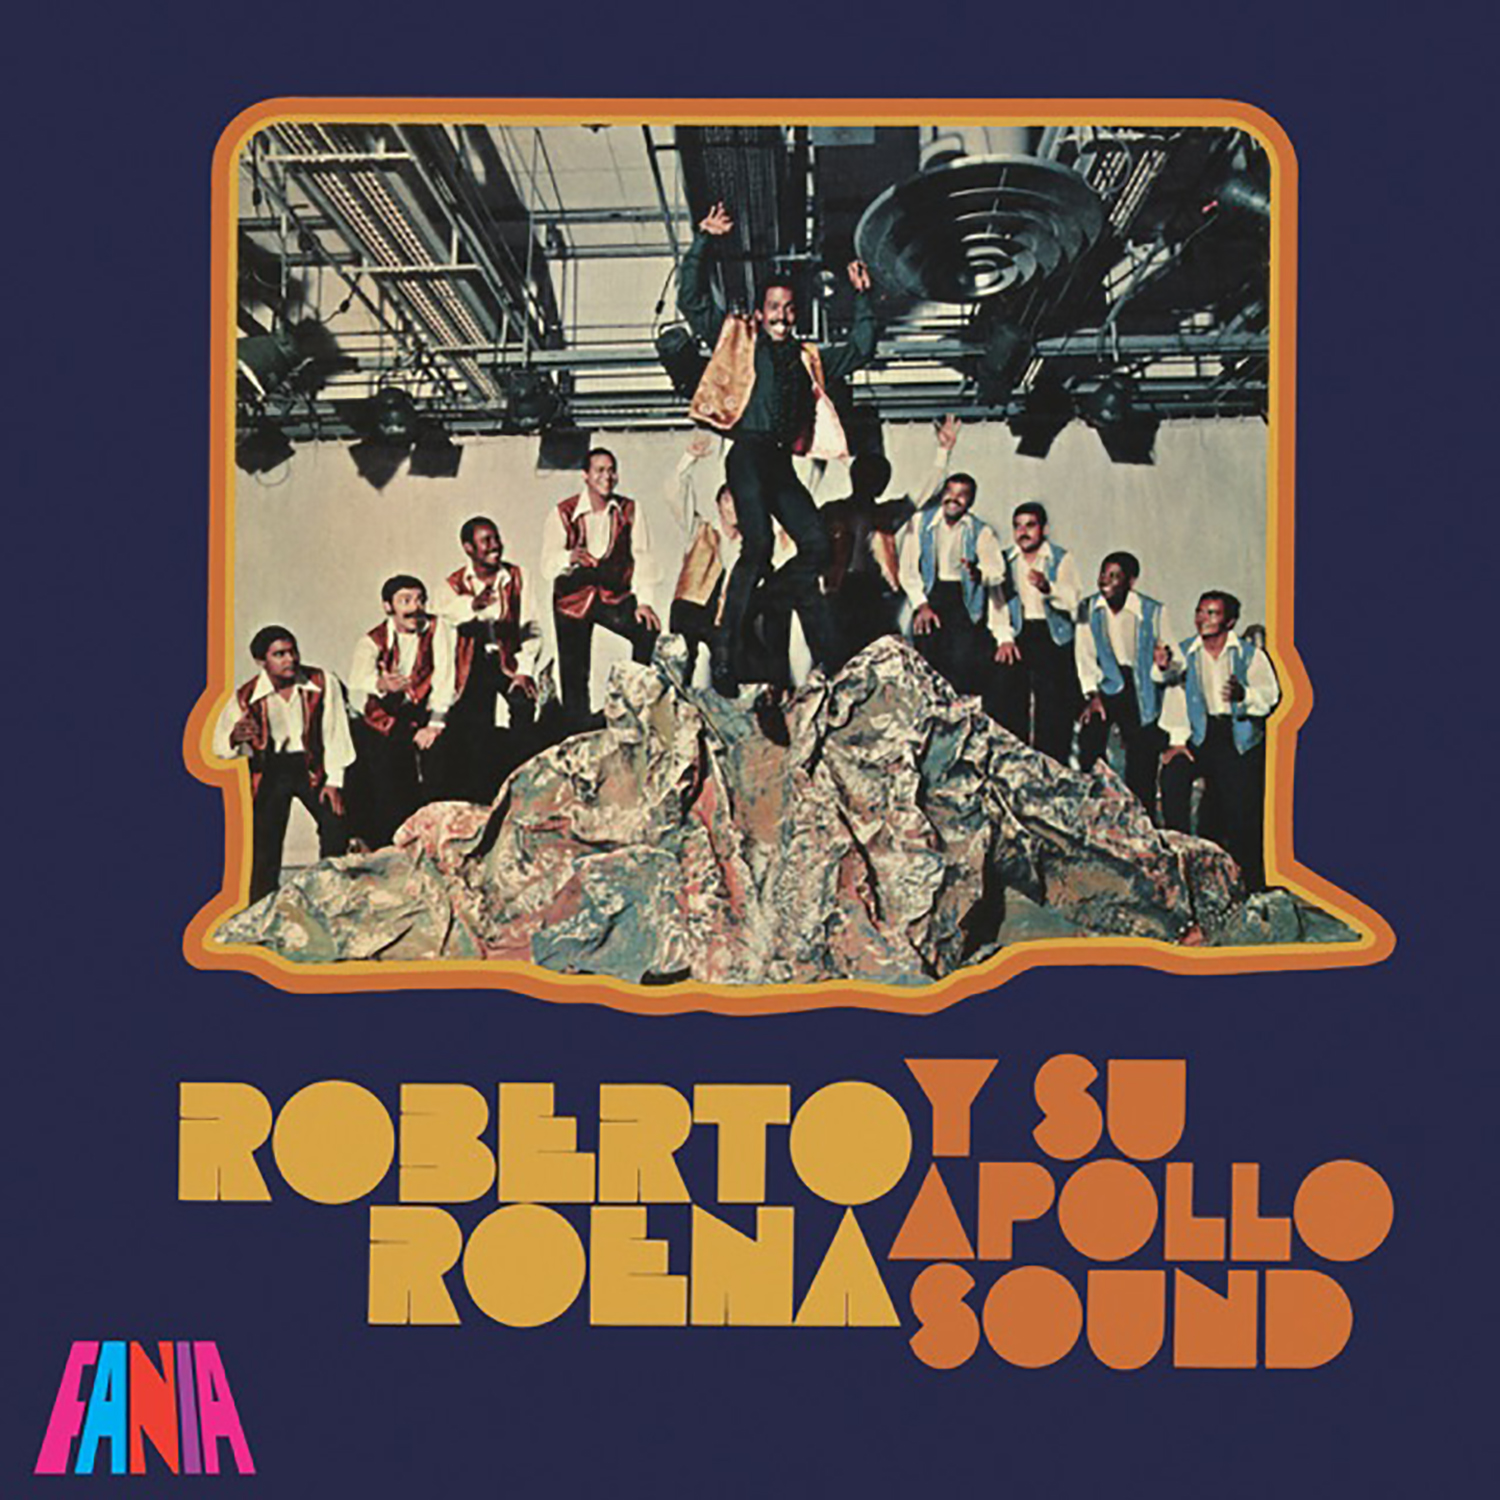 Featured image for “Roberto Roena y Su Apollo Sound”